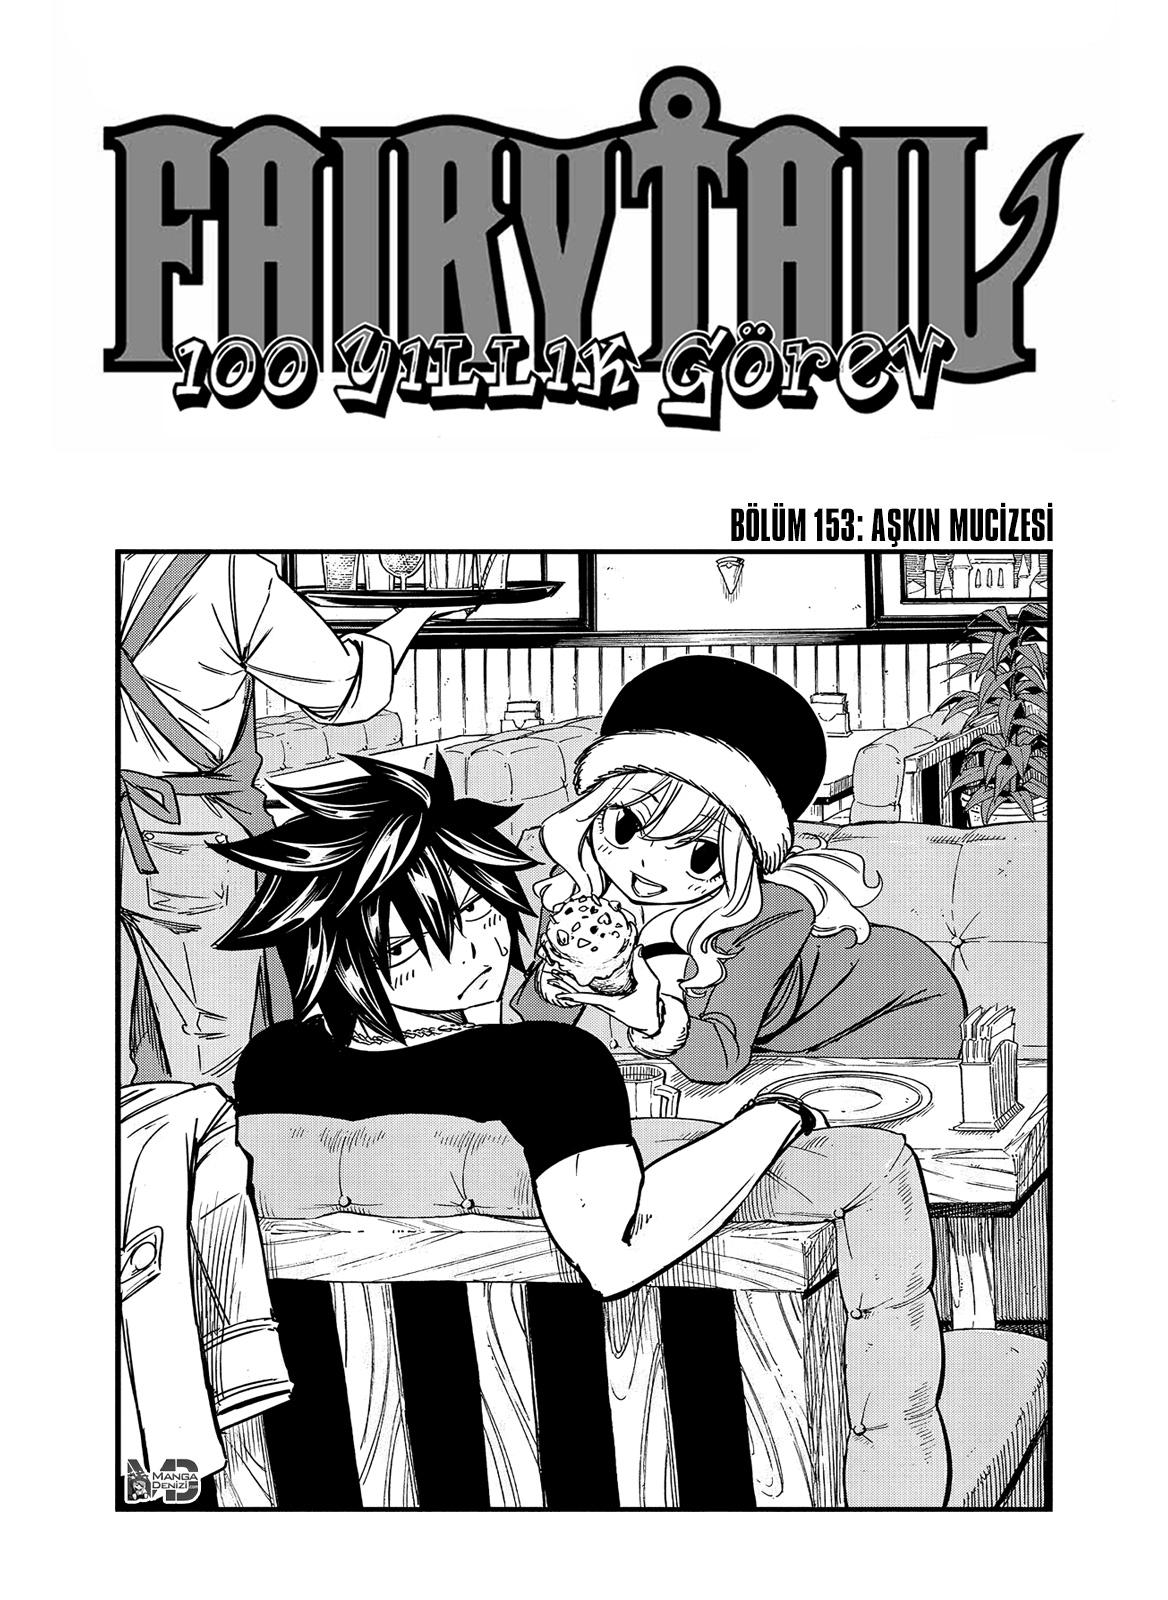 Fairy Tail: 100 Years Quest mangasının 153 bölümünün 2. sayfasını okuyorsunuz.